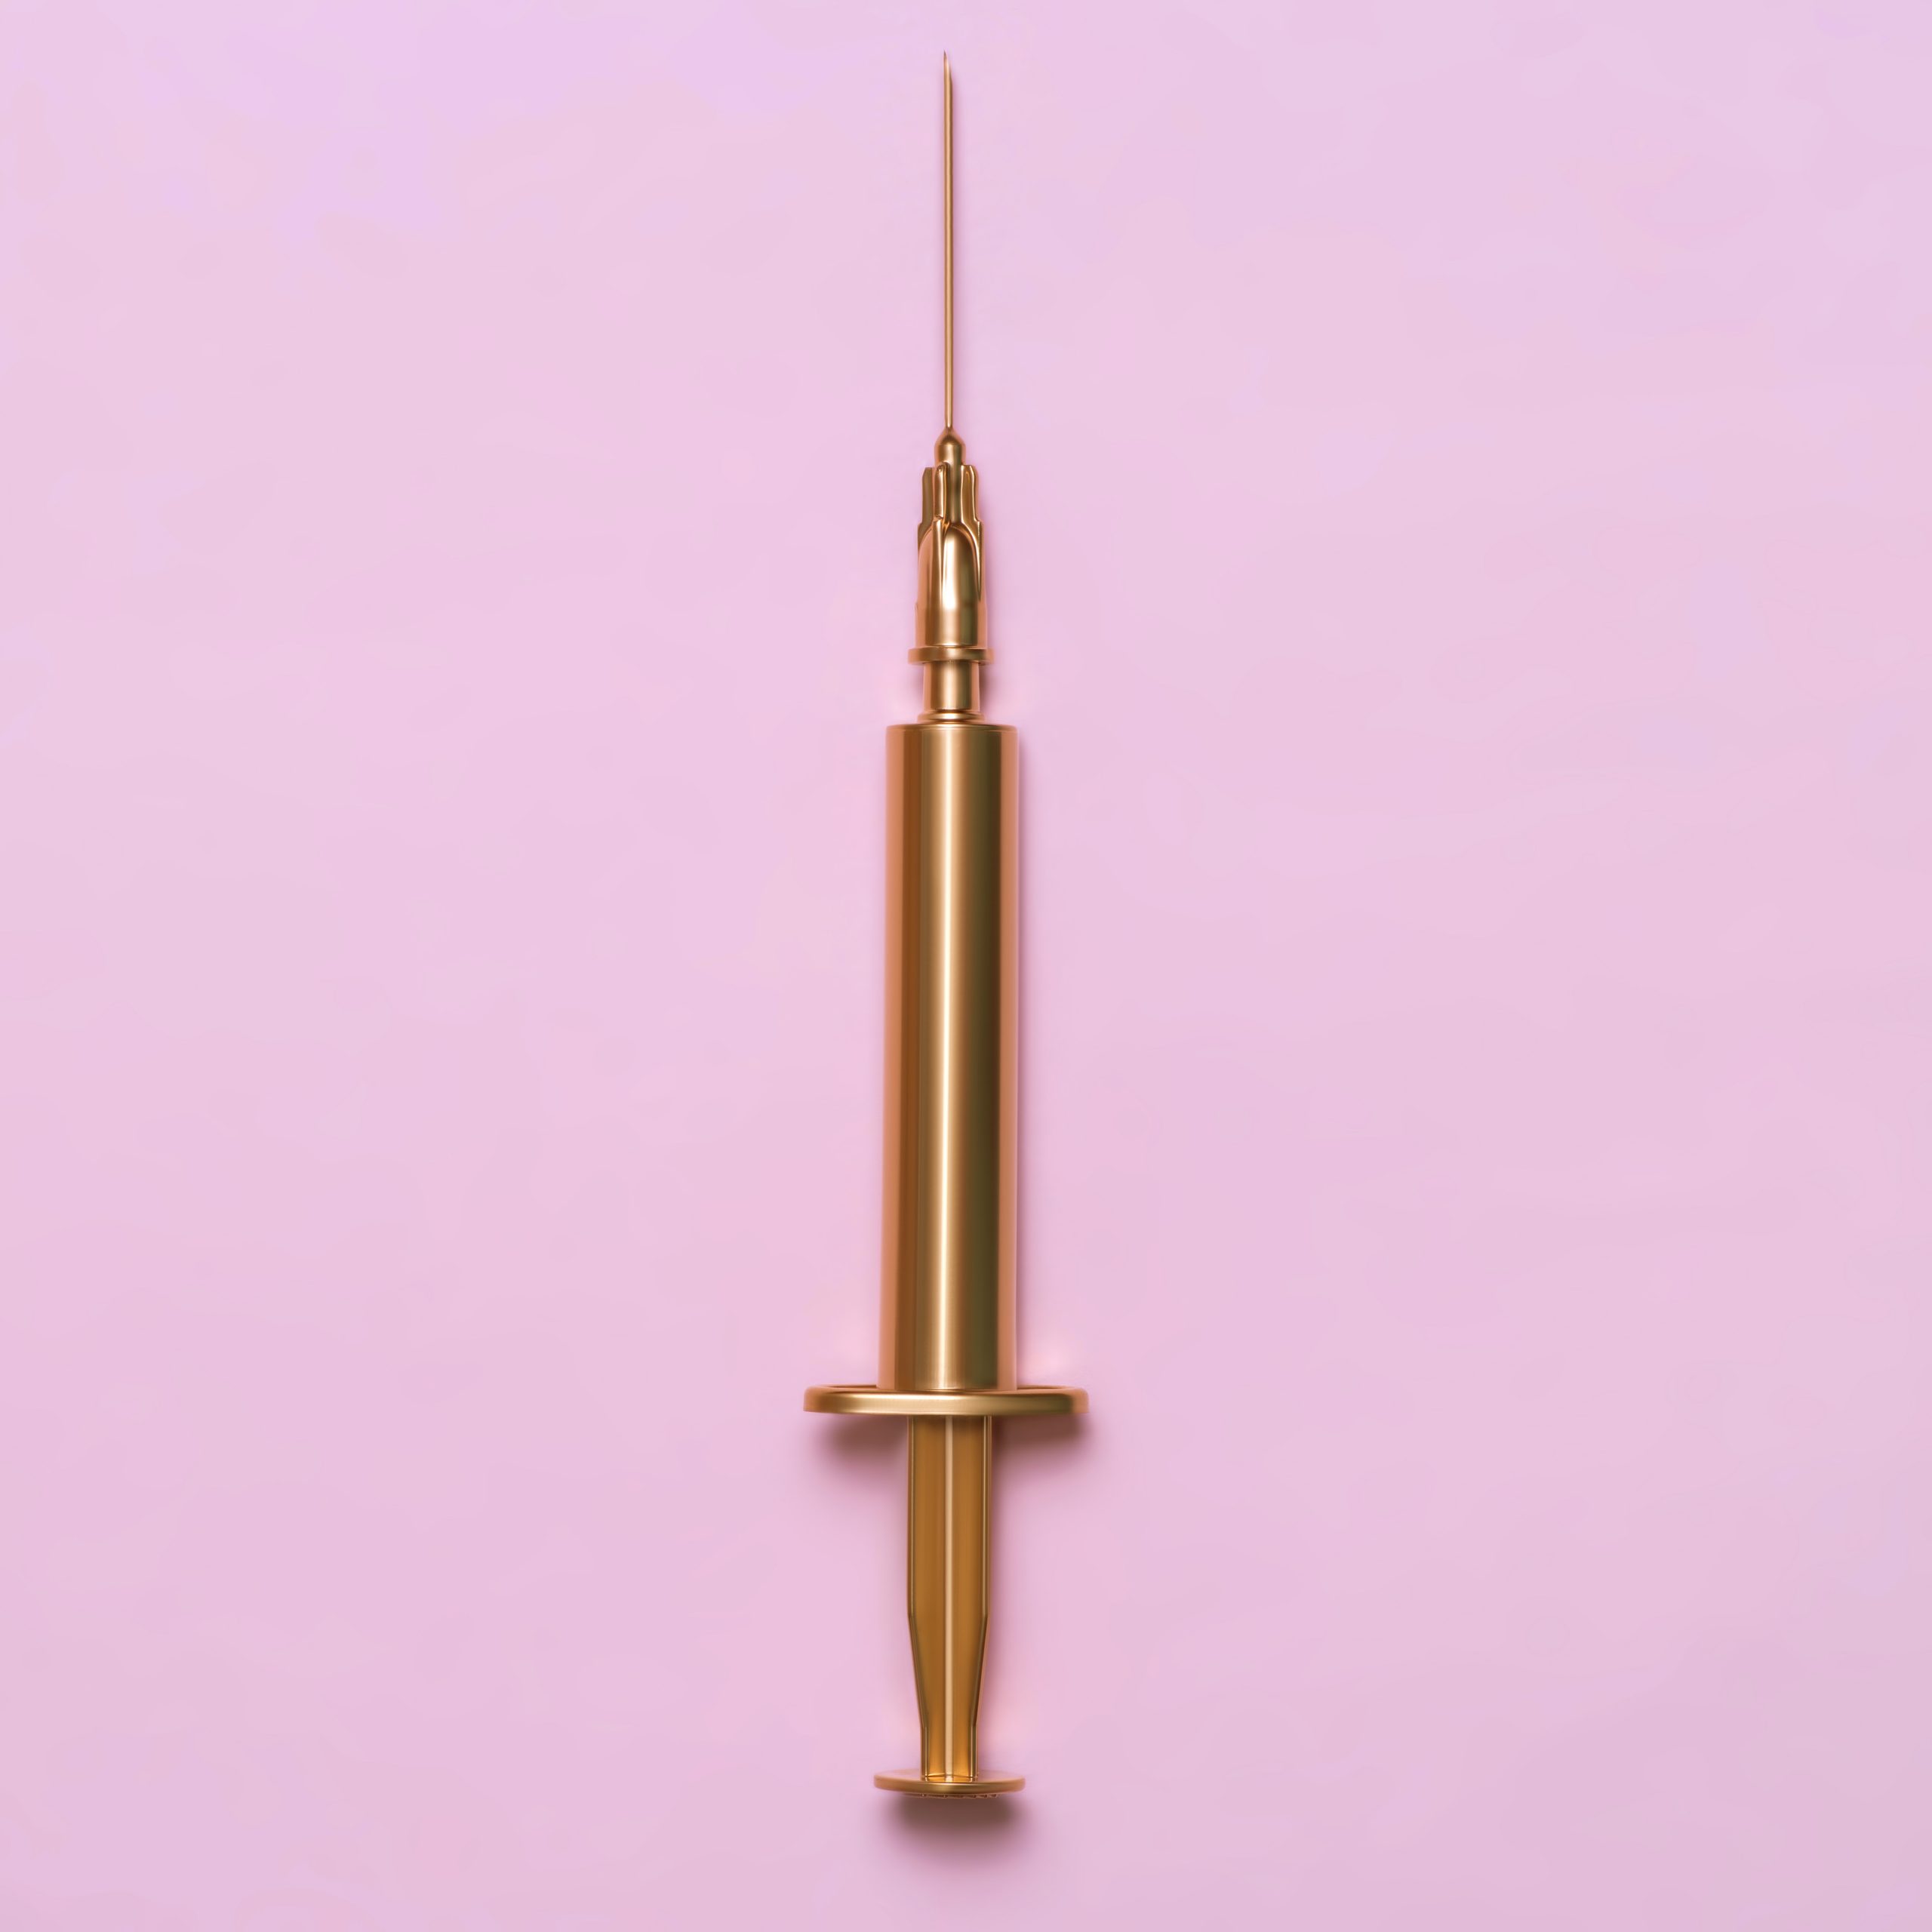 Golden syringe on a pink background